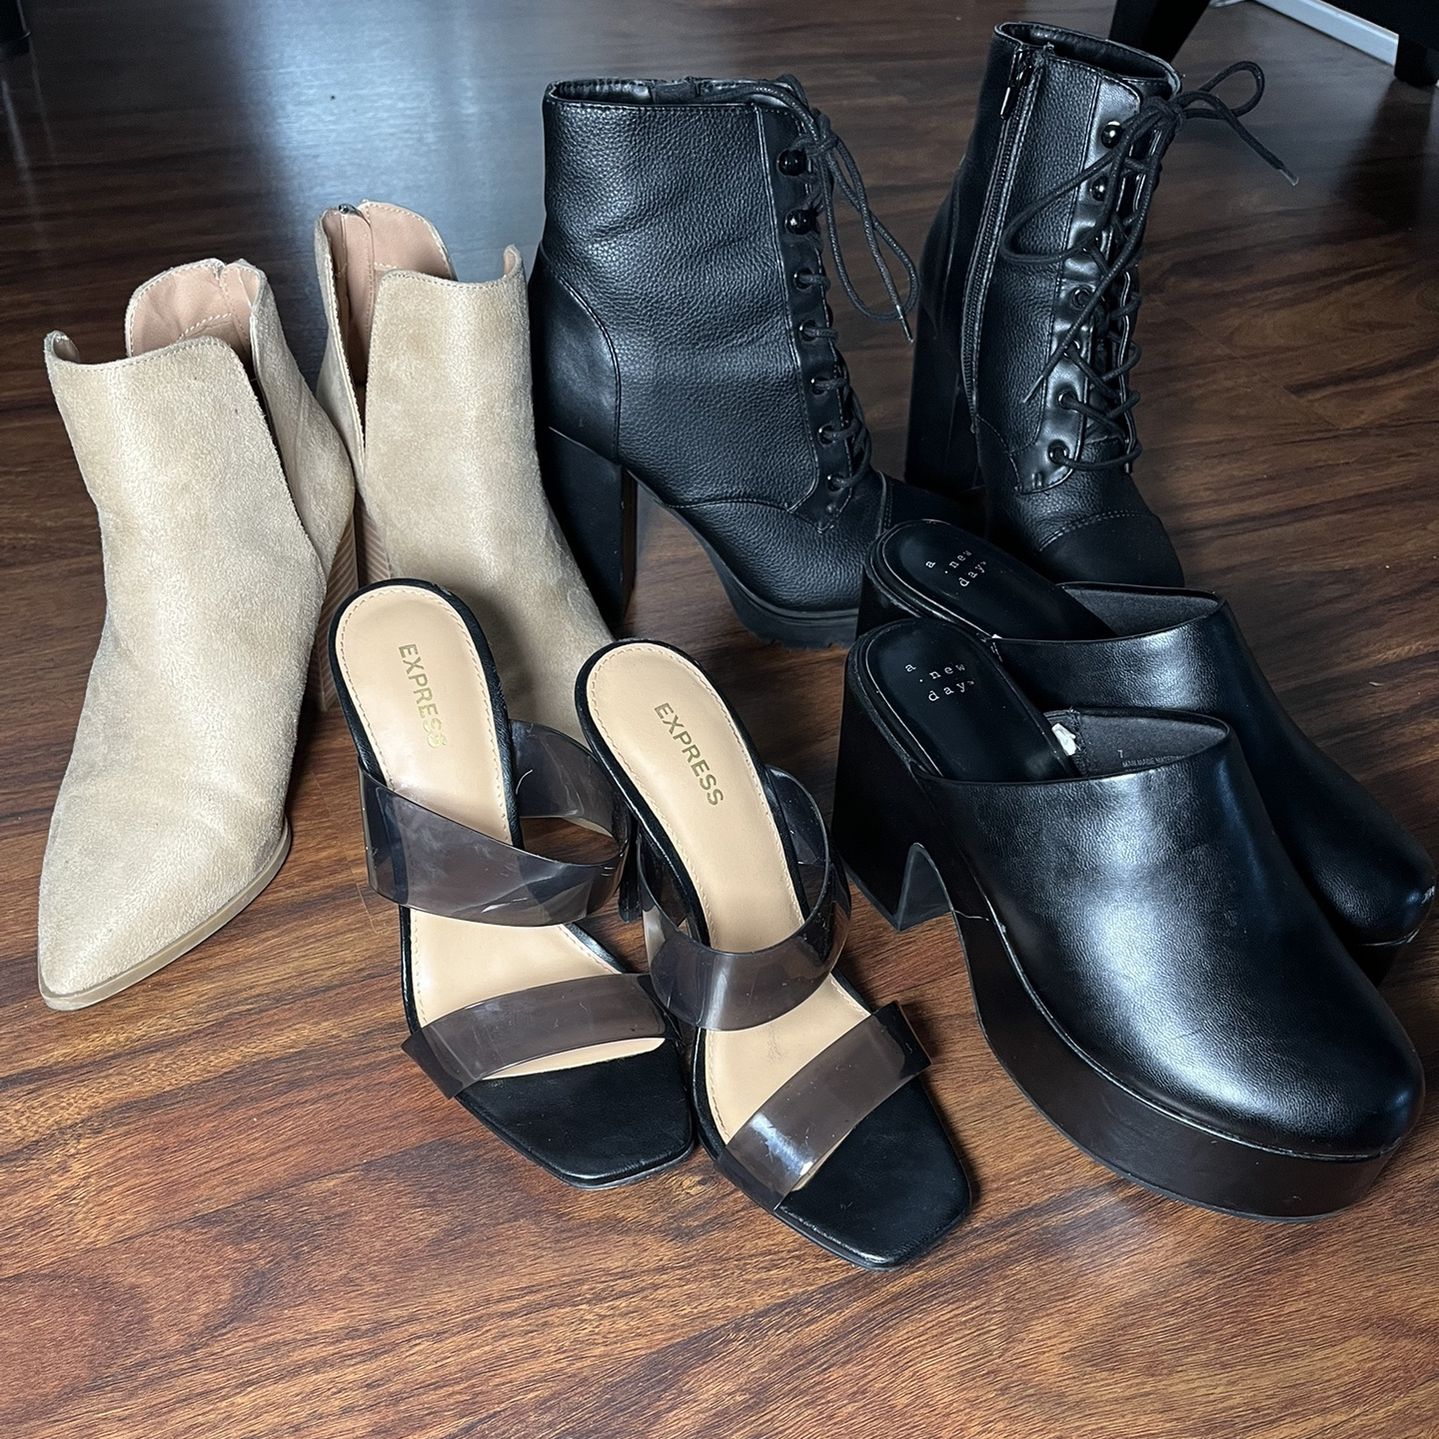 Size 7 Women’s Boots Heels Booties